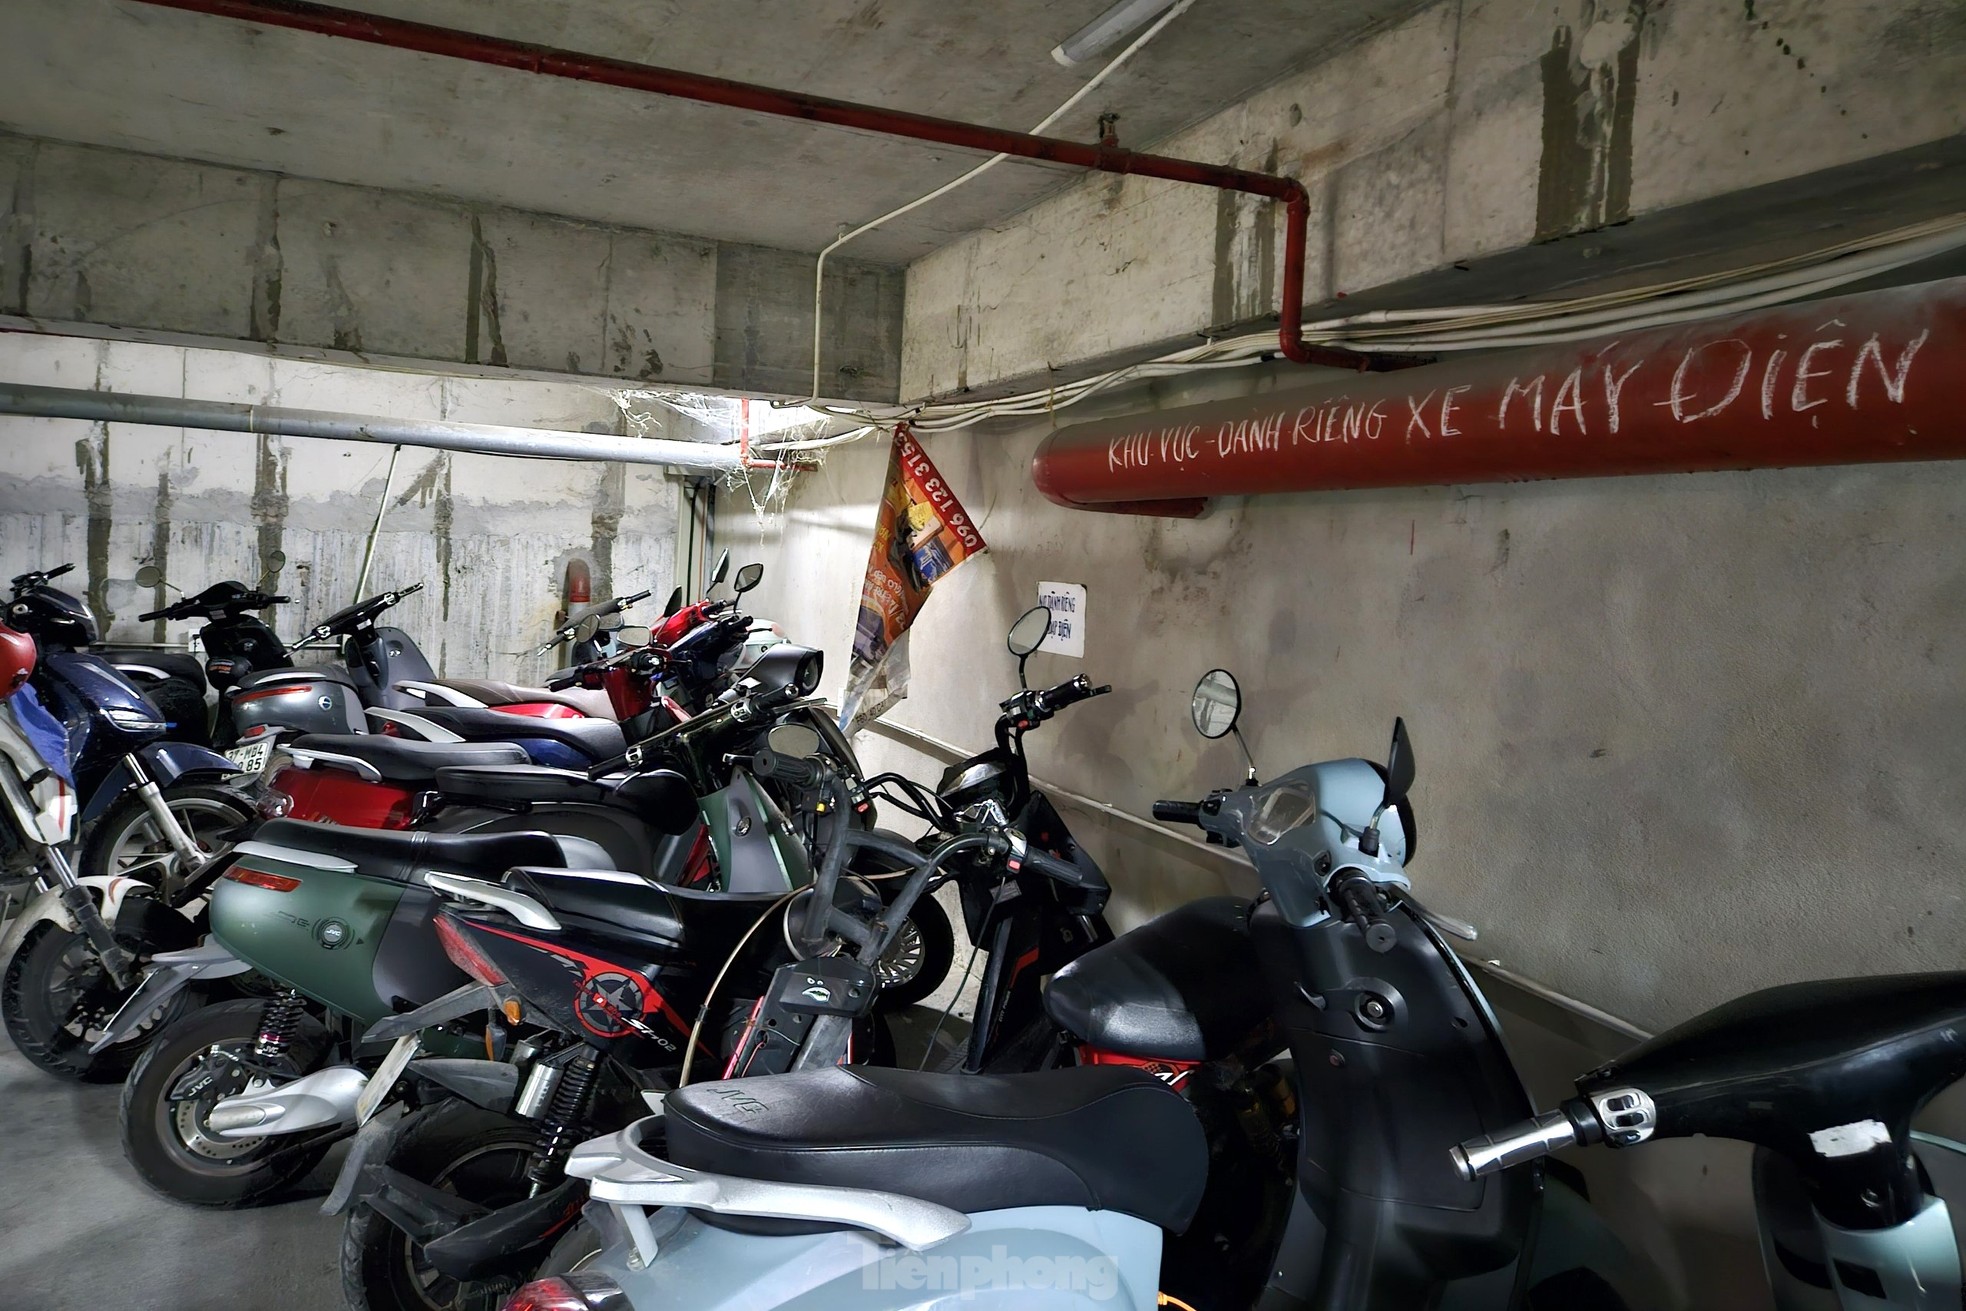 Nhiều chung cư ở Nghệ An bố trí điểm sạc xe điện riêng, có nơi cấm sạc qua đêm - Ảnh 8.